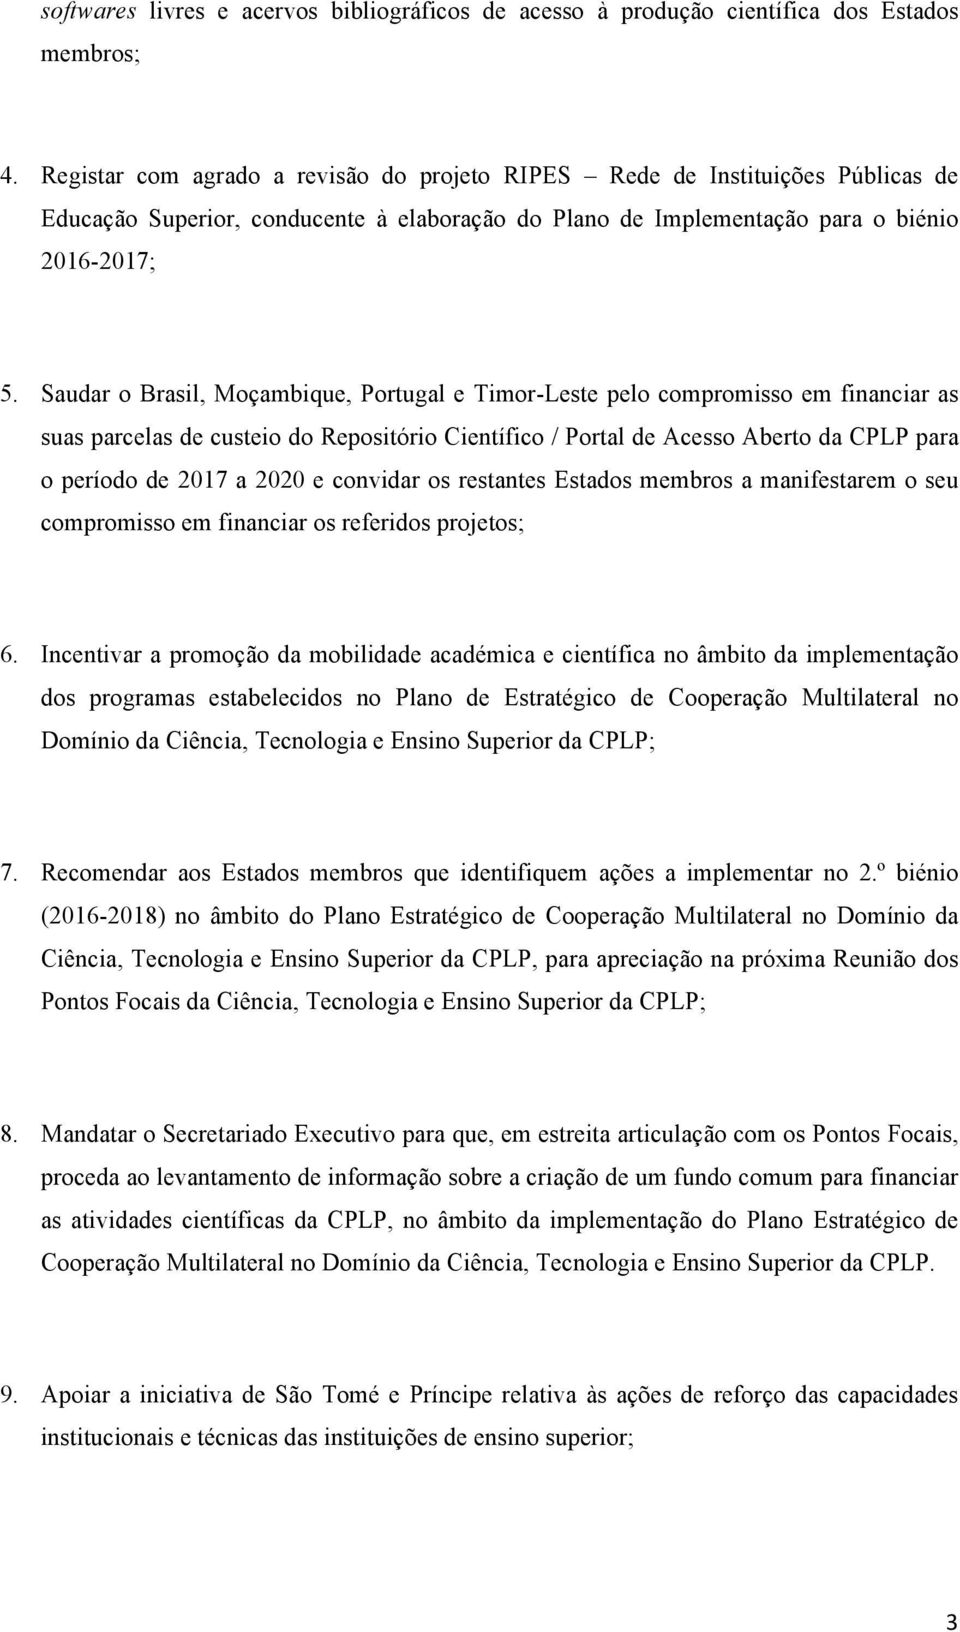 Saudar o Brasil, Moçambique, Portugal e Timor-Leste pelo compromisso em financiar as suas parcelas de custeio do Repositório Científico / Portal de Acesso Aberto da CPLP para o período de 2017 a 2020